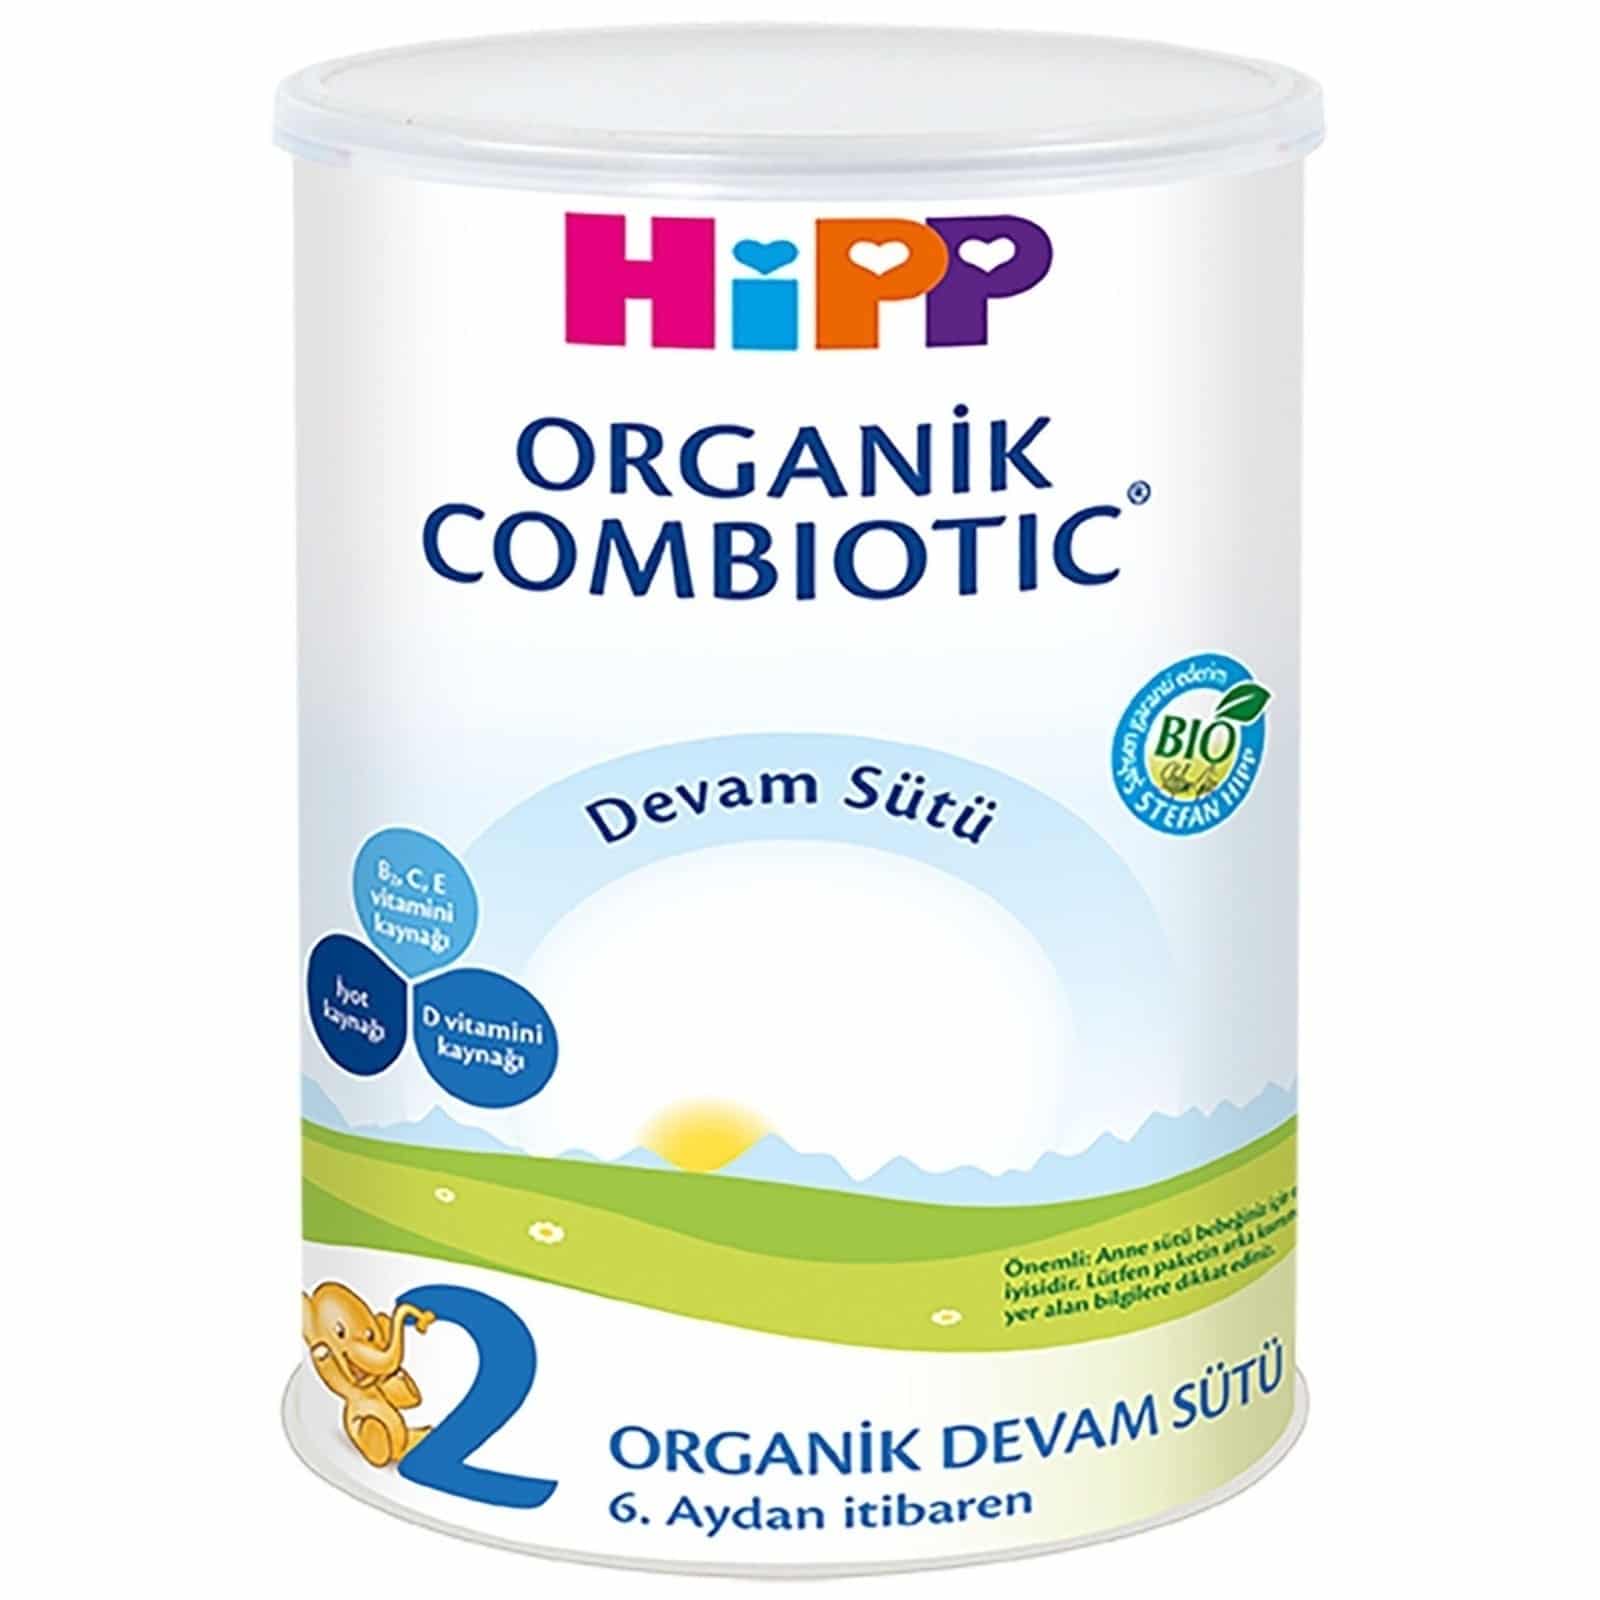 Hipp Organik Combiyotik Devam Sütü